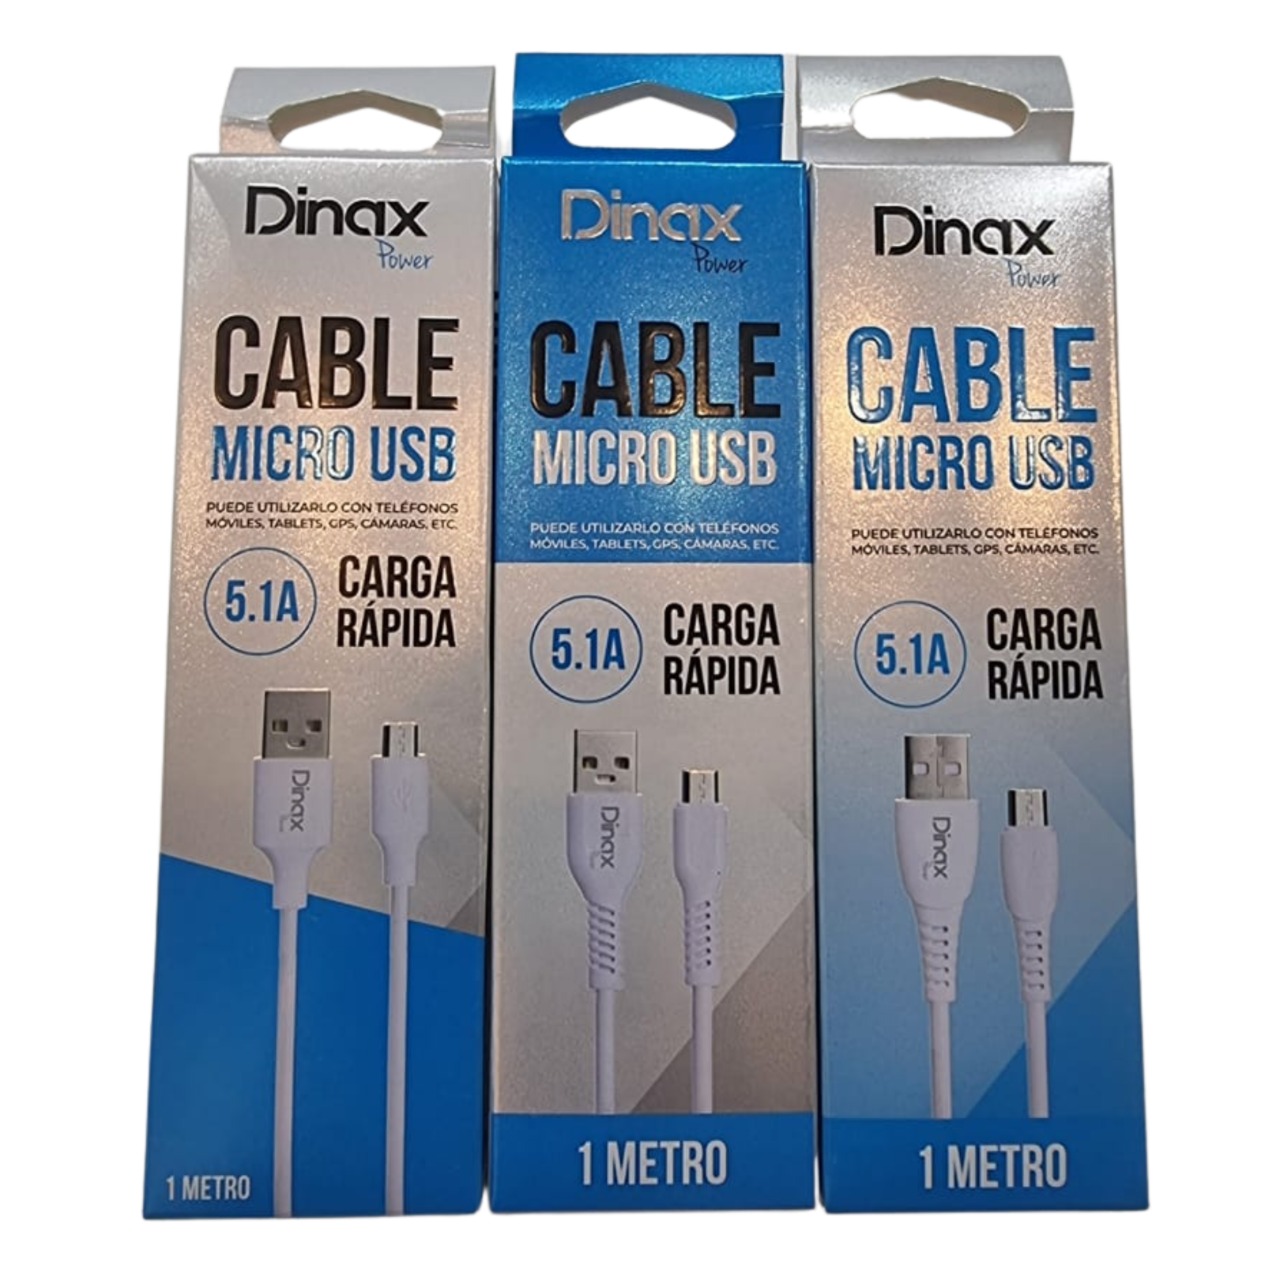 Cable USB a Micro Dinax 5.1A Carga Rápida - Daz Importadora